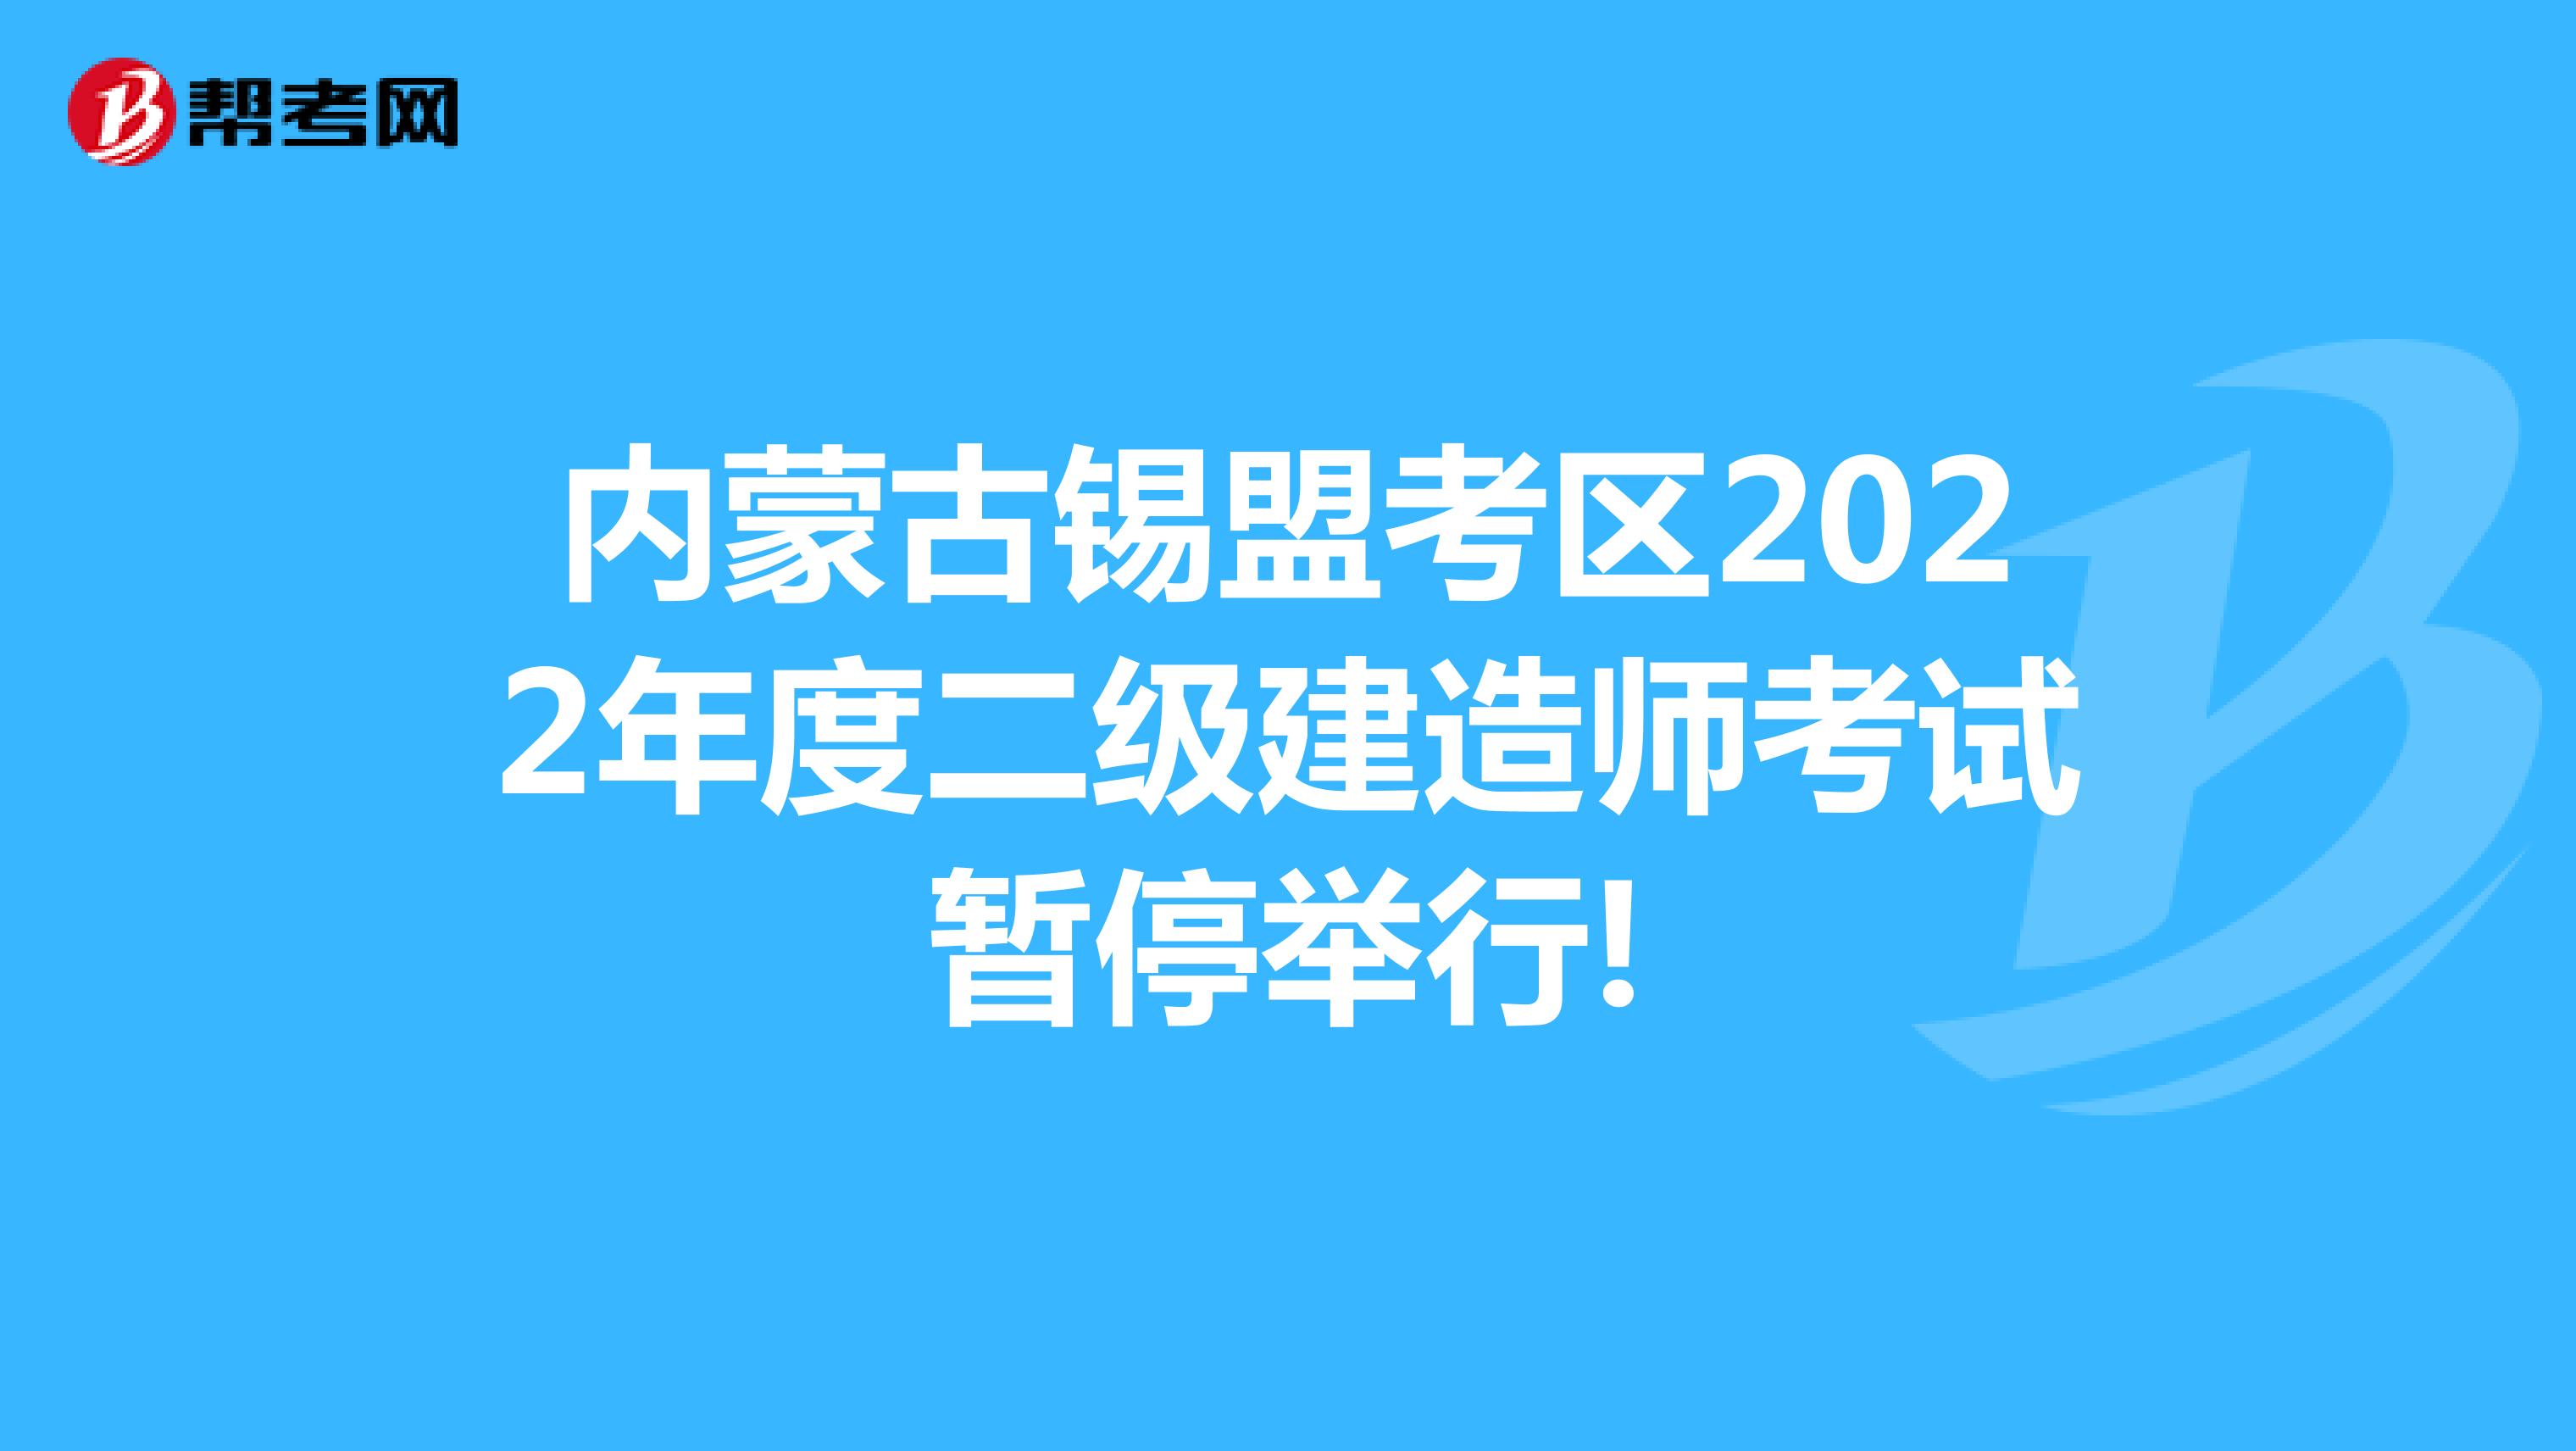 内蒙古锡盟考区2022年度二级建造师考试暂停举行!